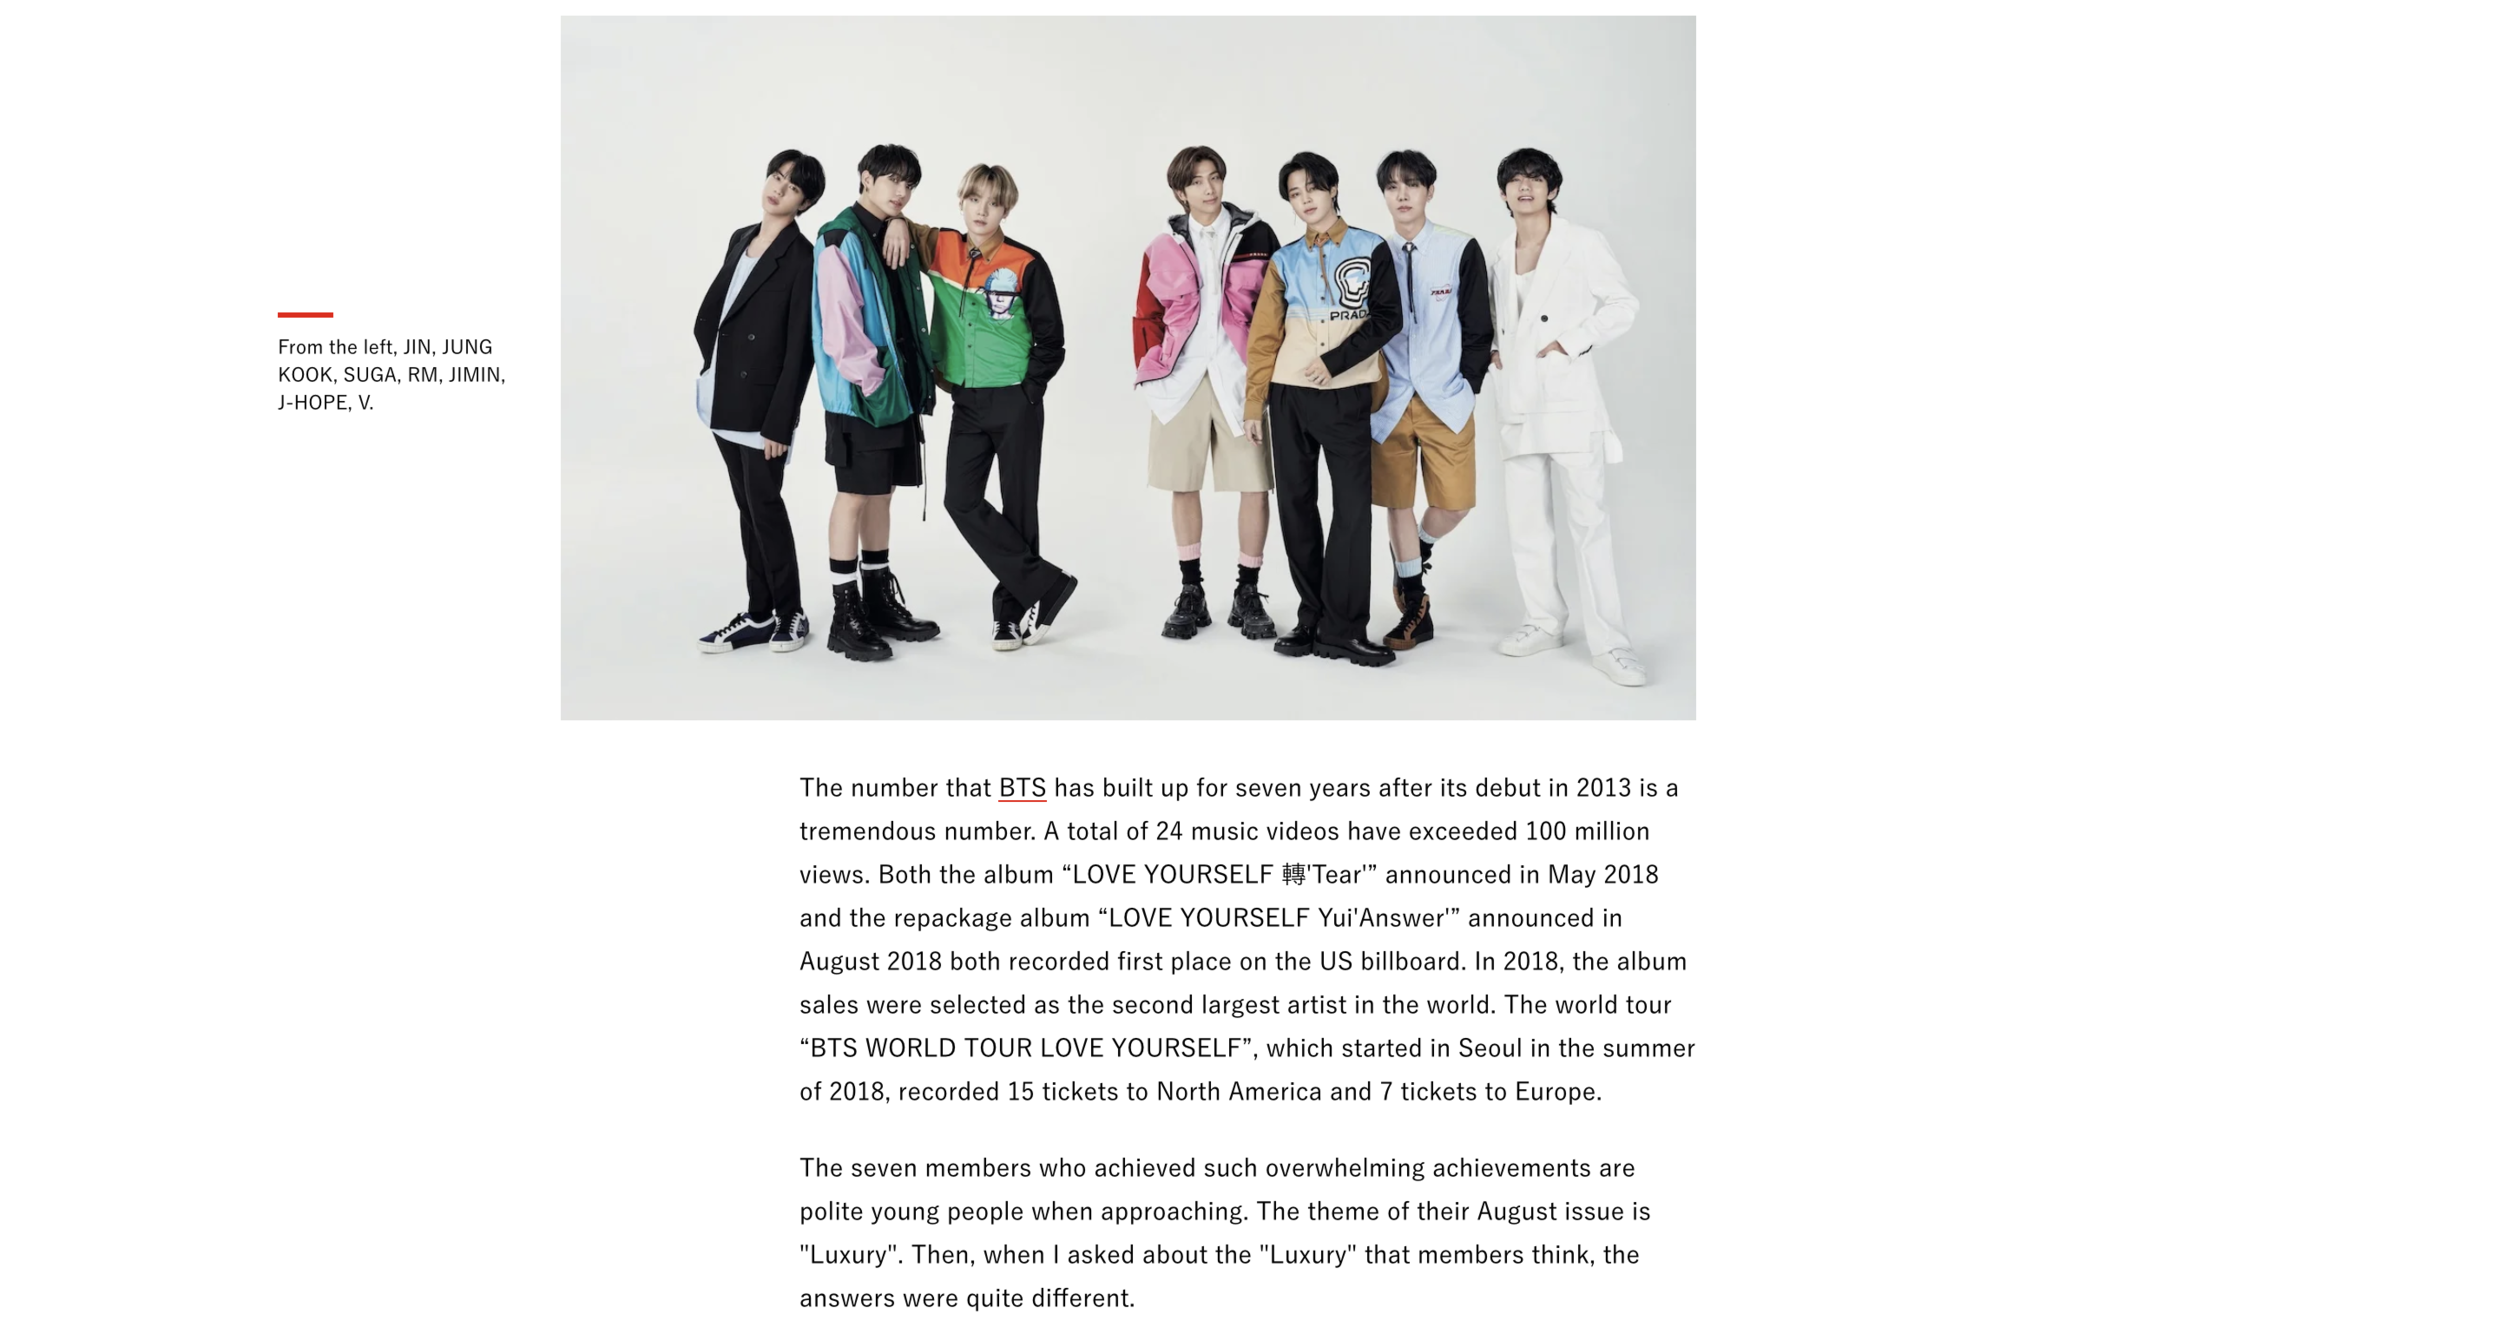 BTS VOGUE Japan 2020 - Article